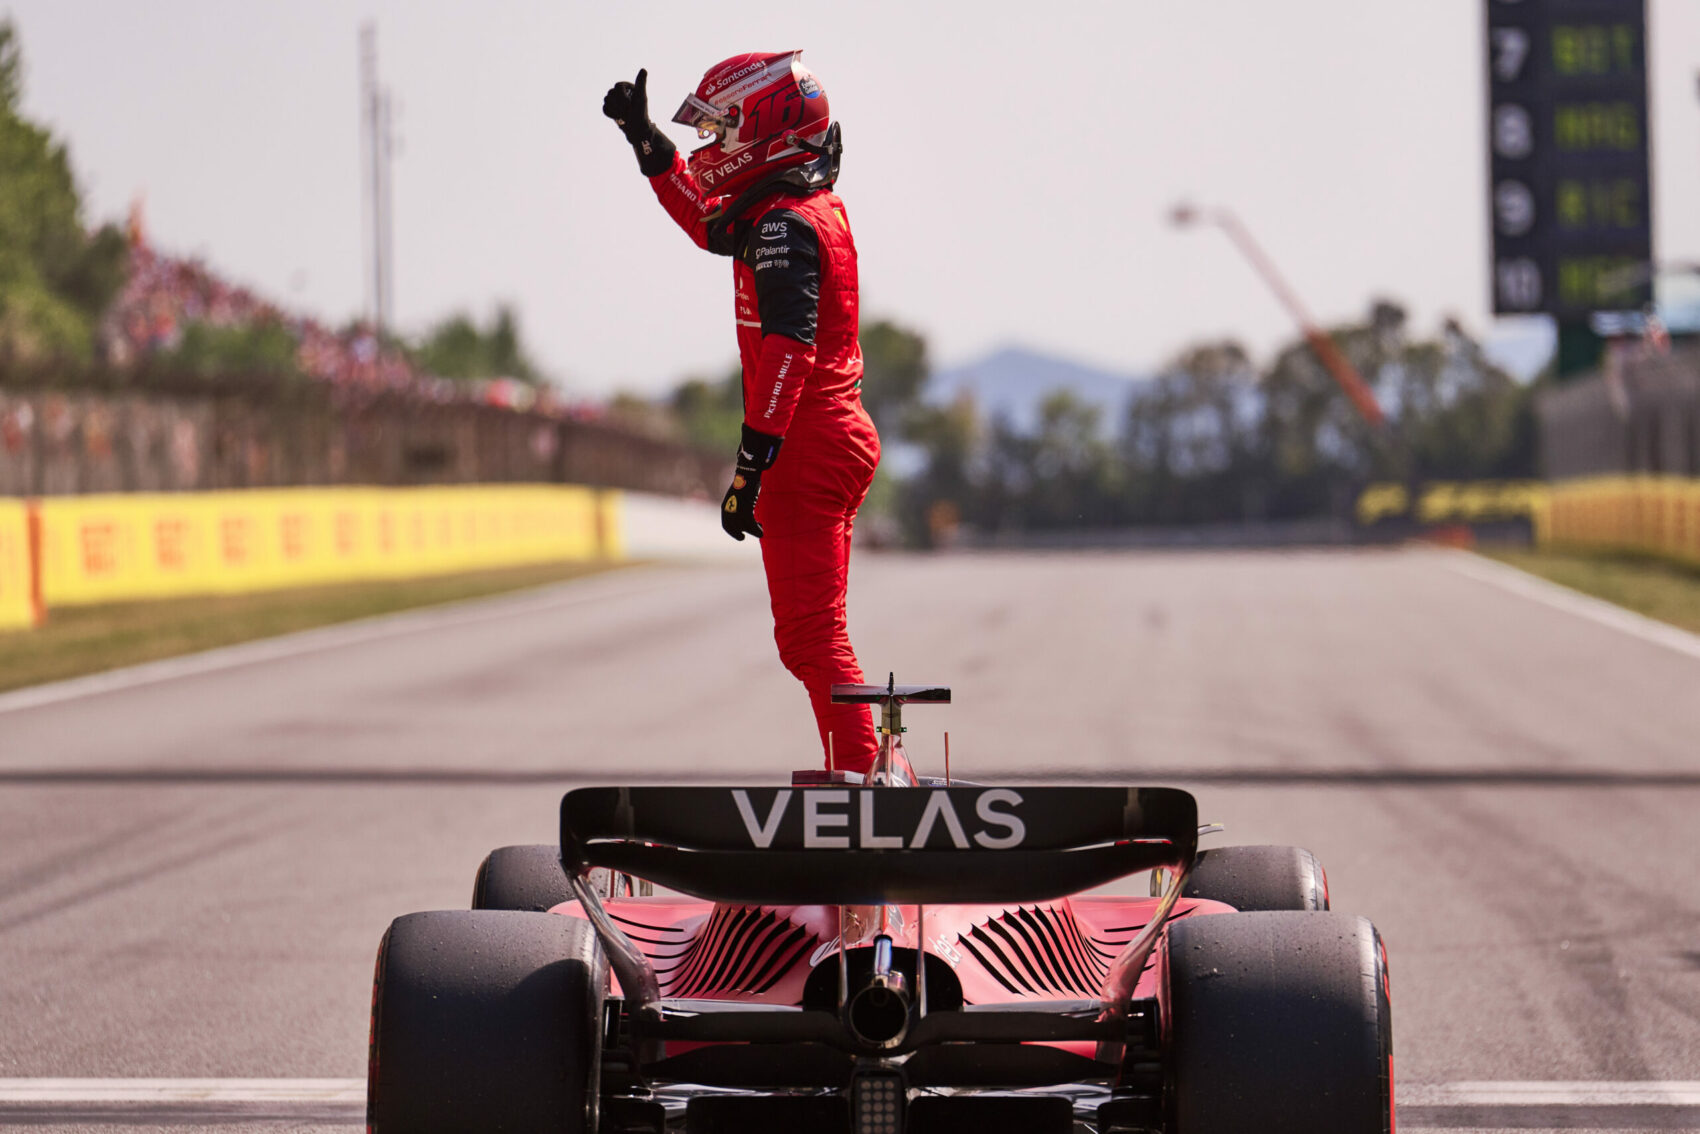 Charles Leclerc, Ferrari, Spanyol Nagydíj, időmérő